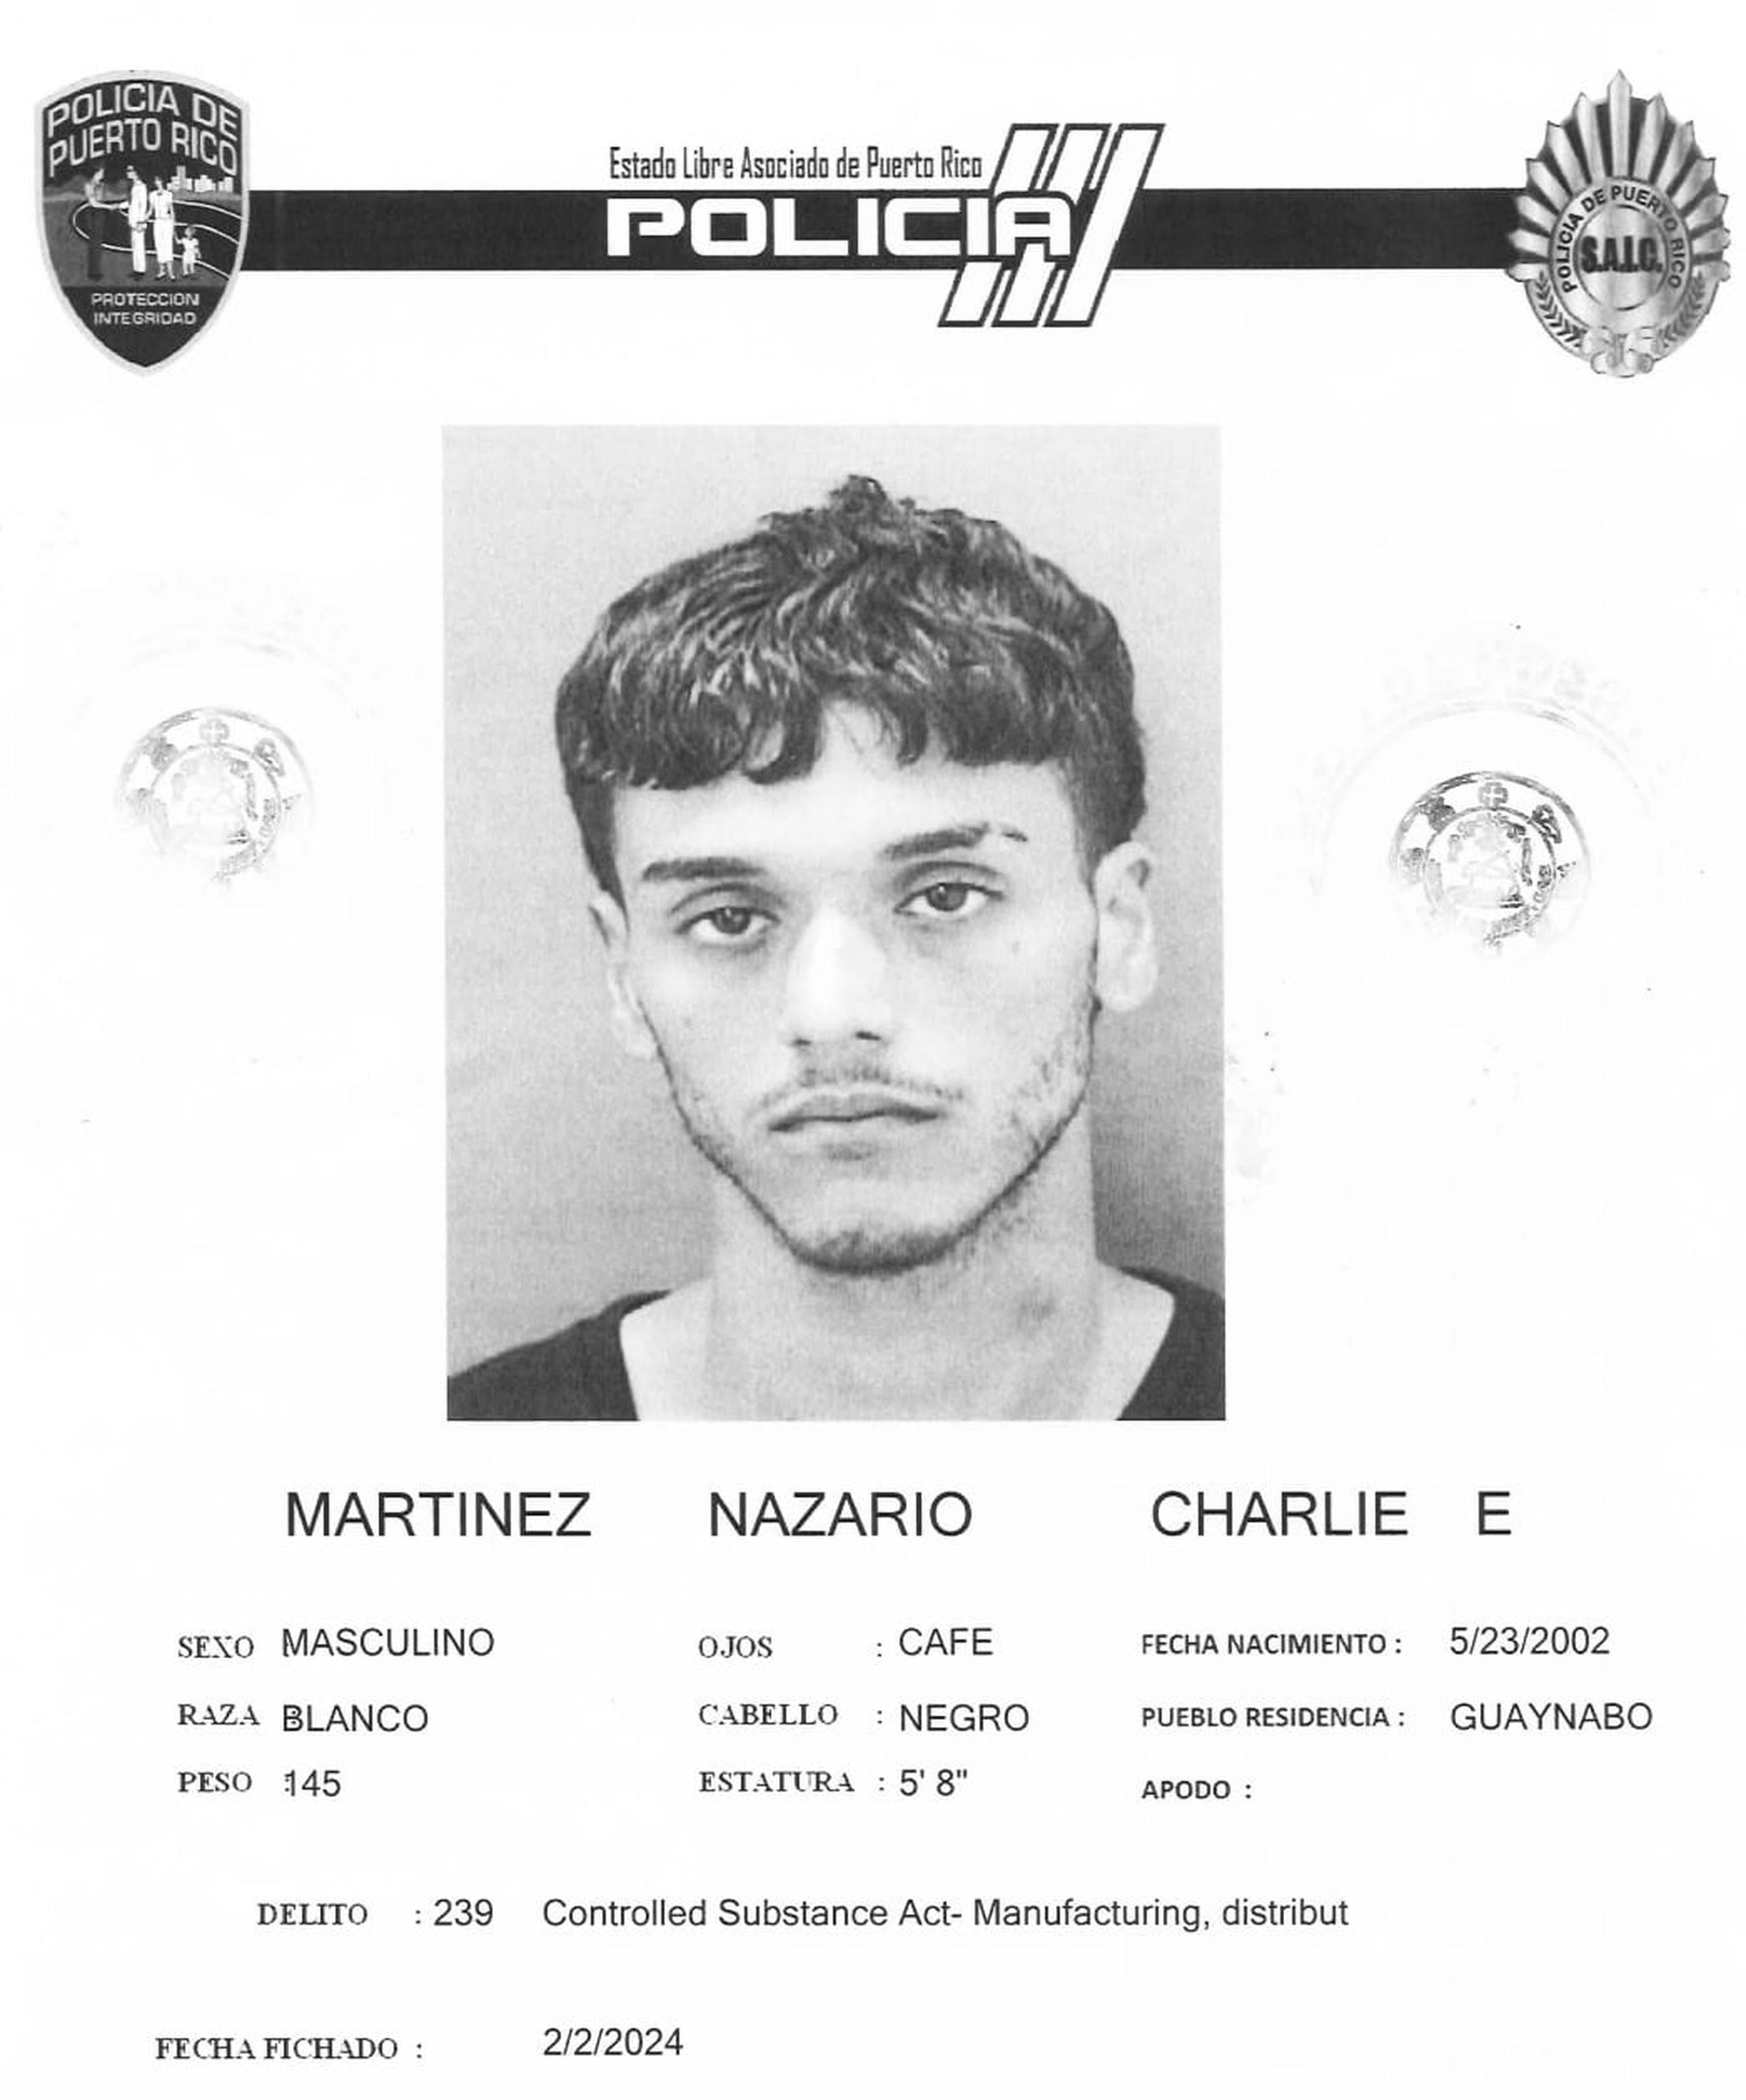 El cadáver baleado de Charlie E. Martínez Nazario fue encontrado el 12 de marzo a orillas de la carretera PR-165 en Dorado.